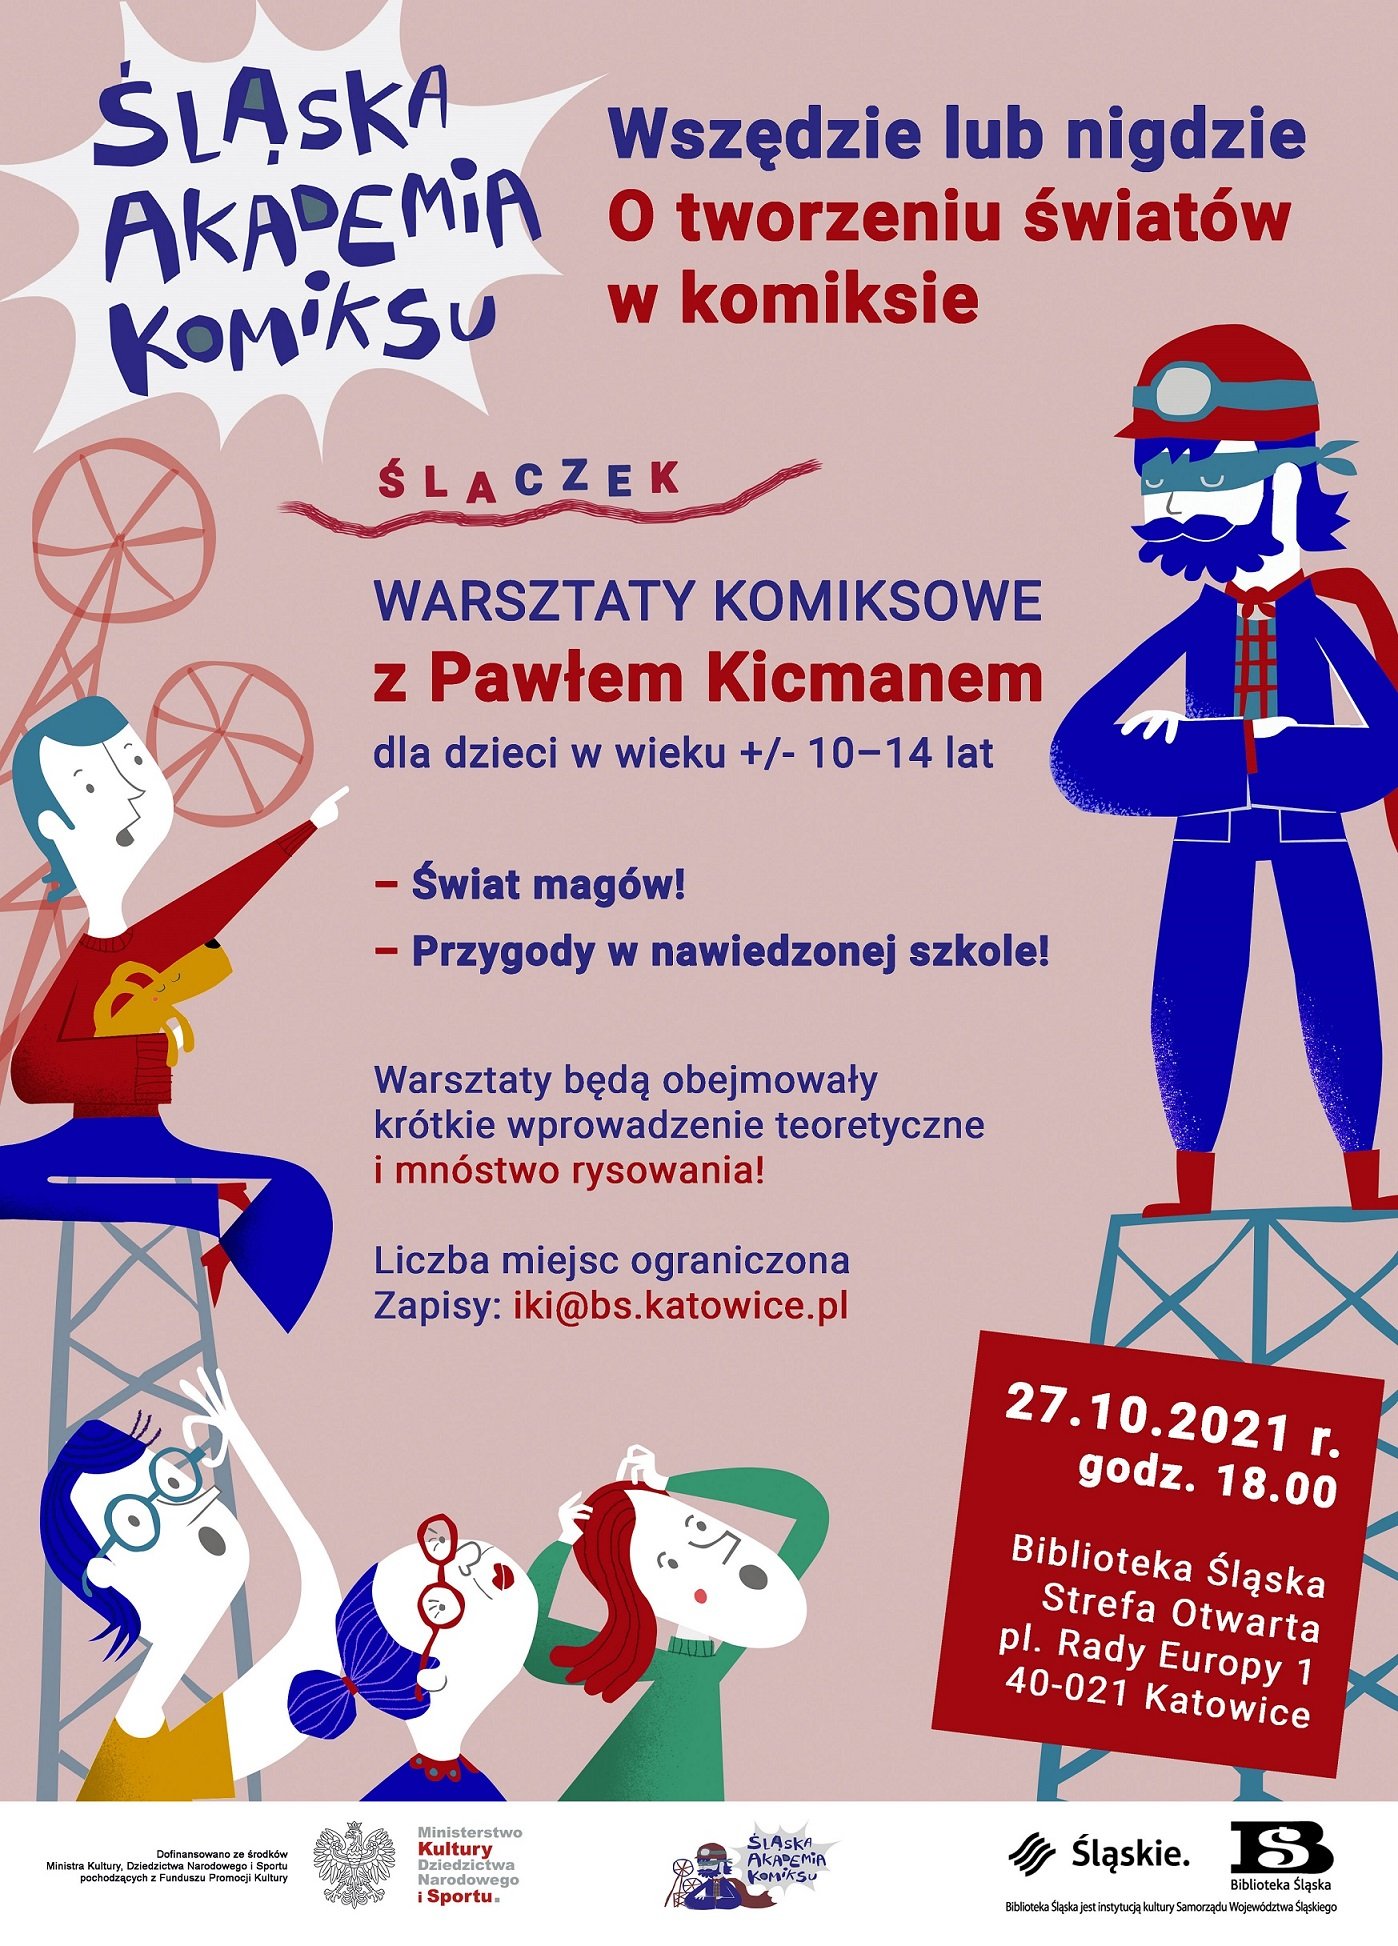 Komiksowe warsztaty plastyczne dla dzieci z Pawłem Kicmanem. Katowice